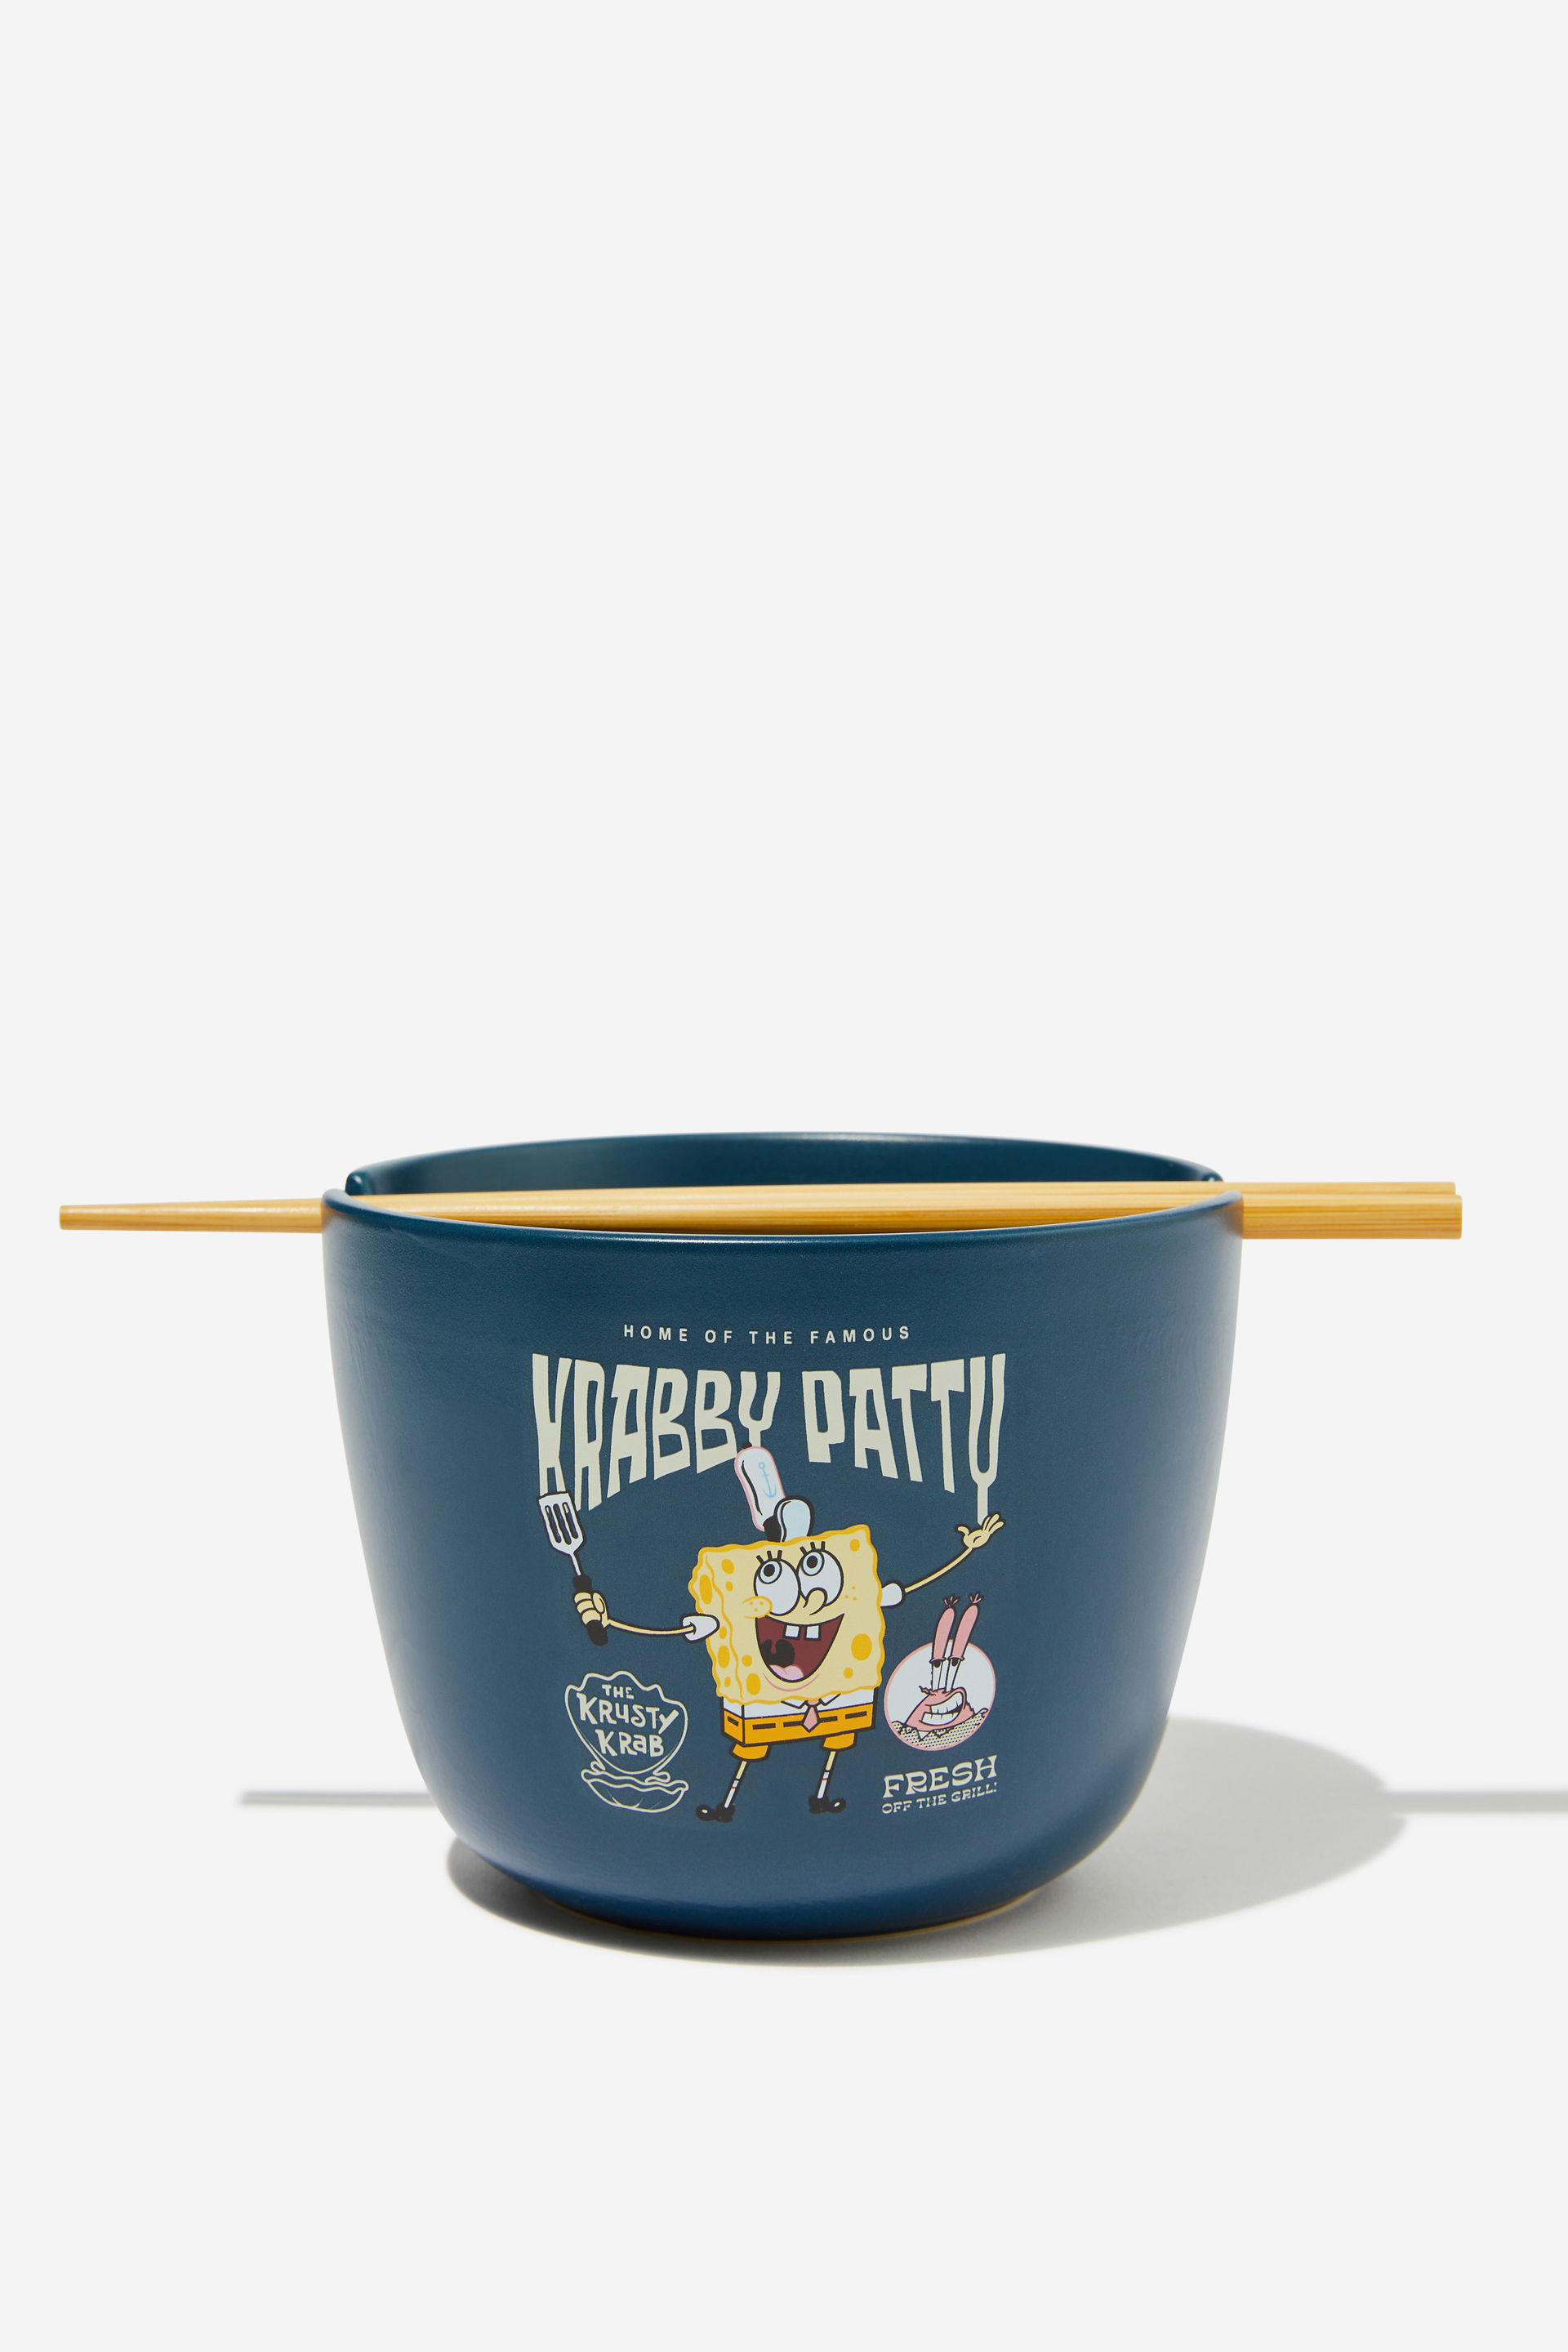 Typo - SpongeBob SquarePants x Feed Me Bowl - Lcn nic spongebob krabby patty